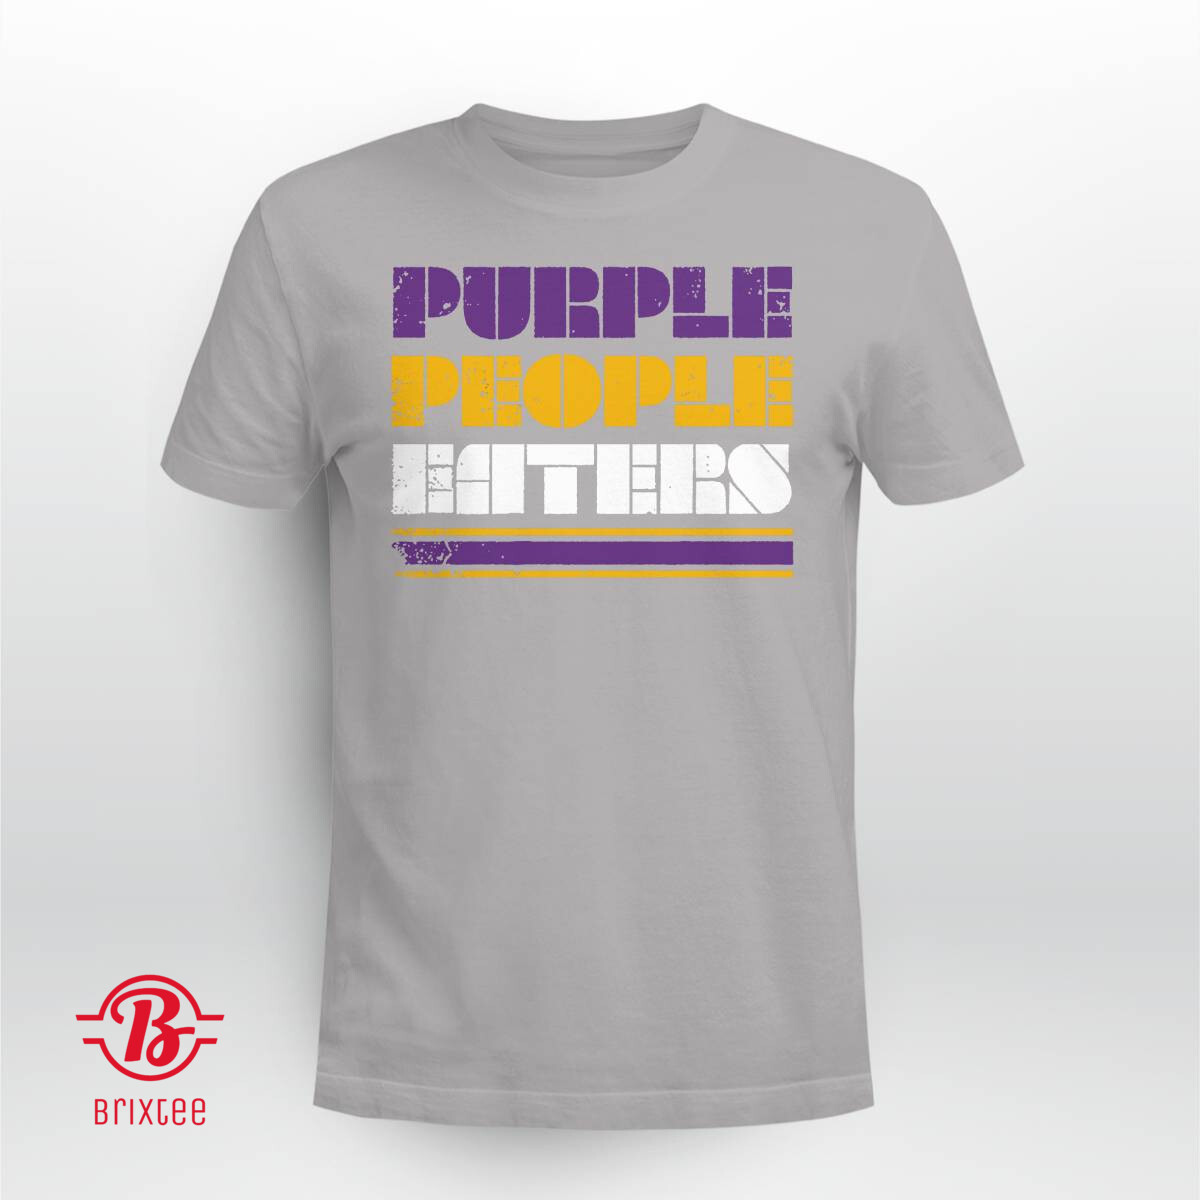 Minnesota Vikings Purple People Eaters